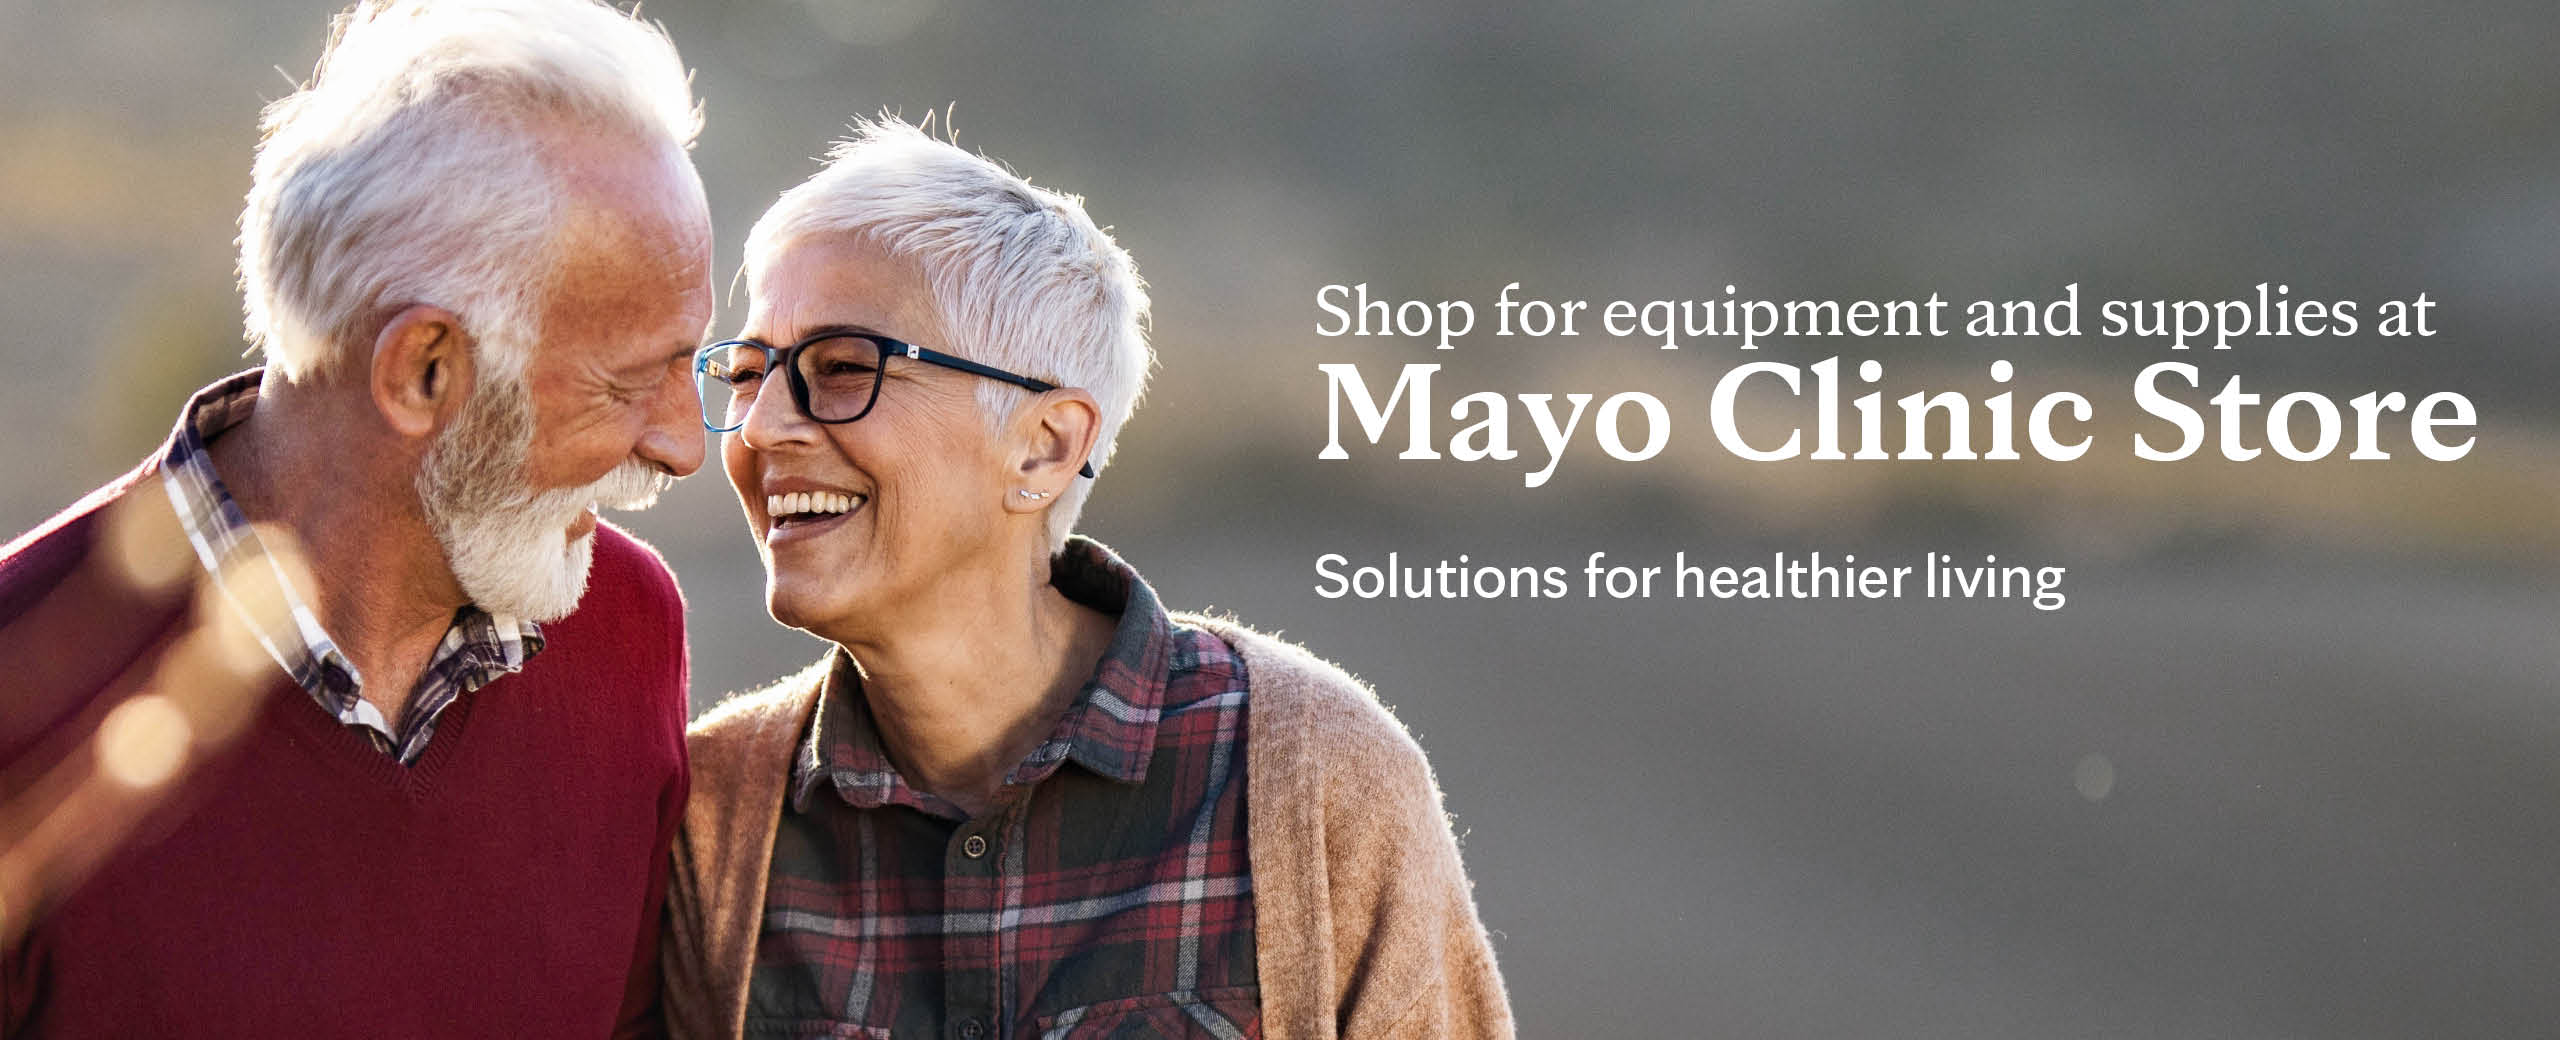 Compra equipos y suministros en la Tienda de soluciones para vida más sana de Mayo Clinic